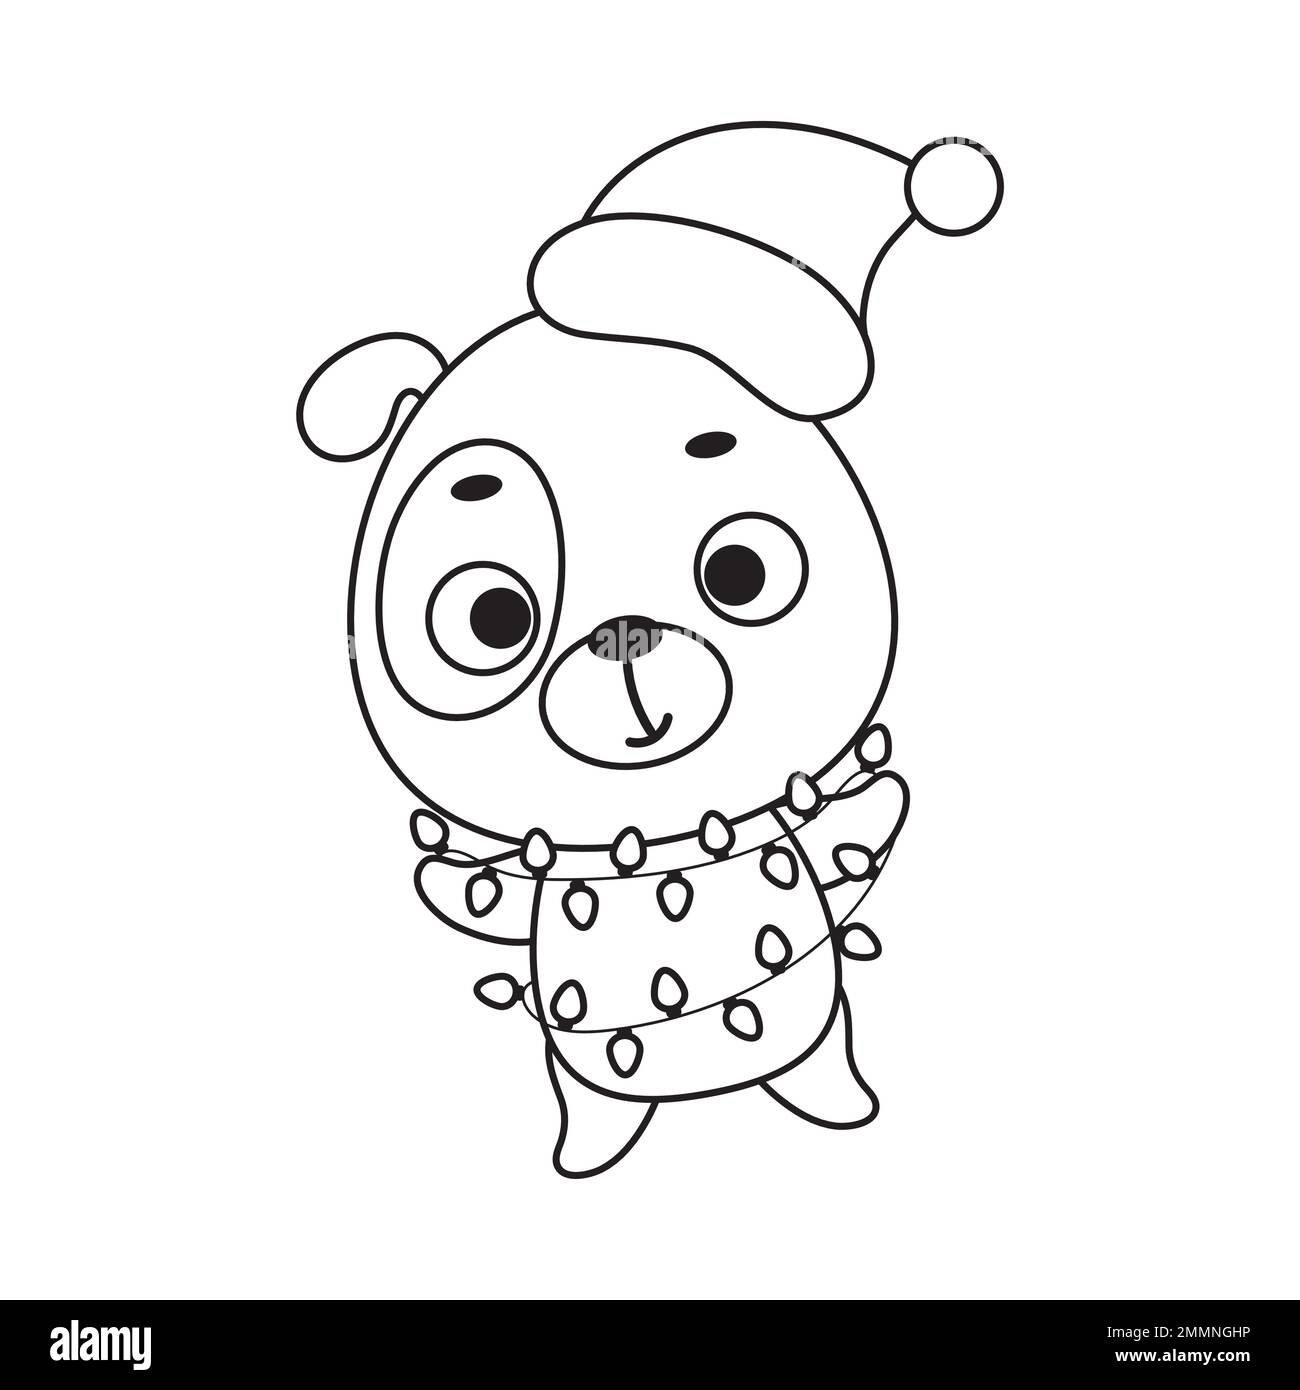 Christmas Coloring Books For Kids Bulk: Adorable Animal Designs